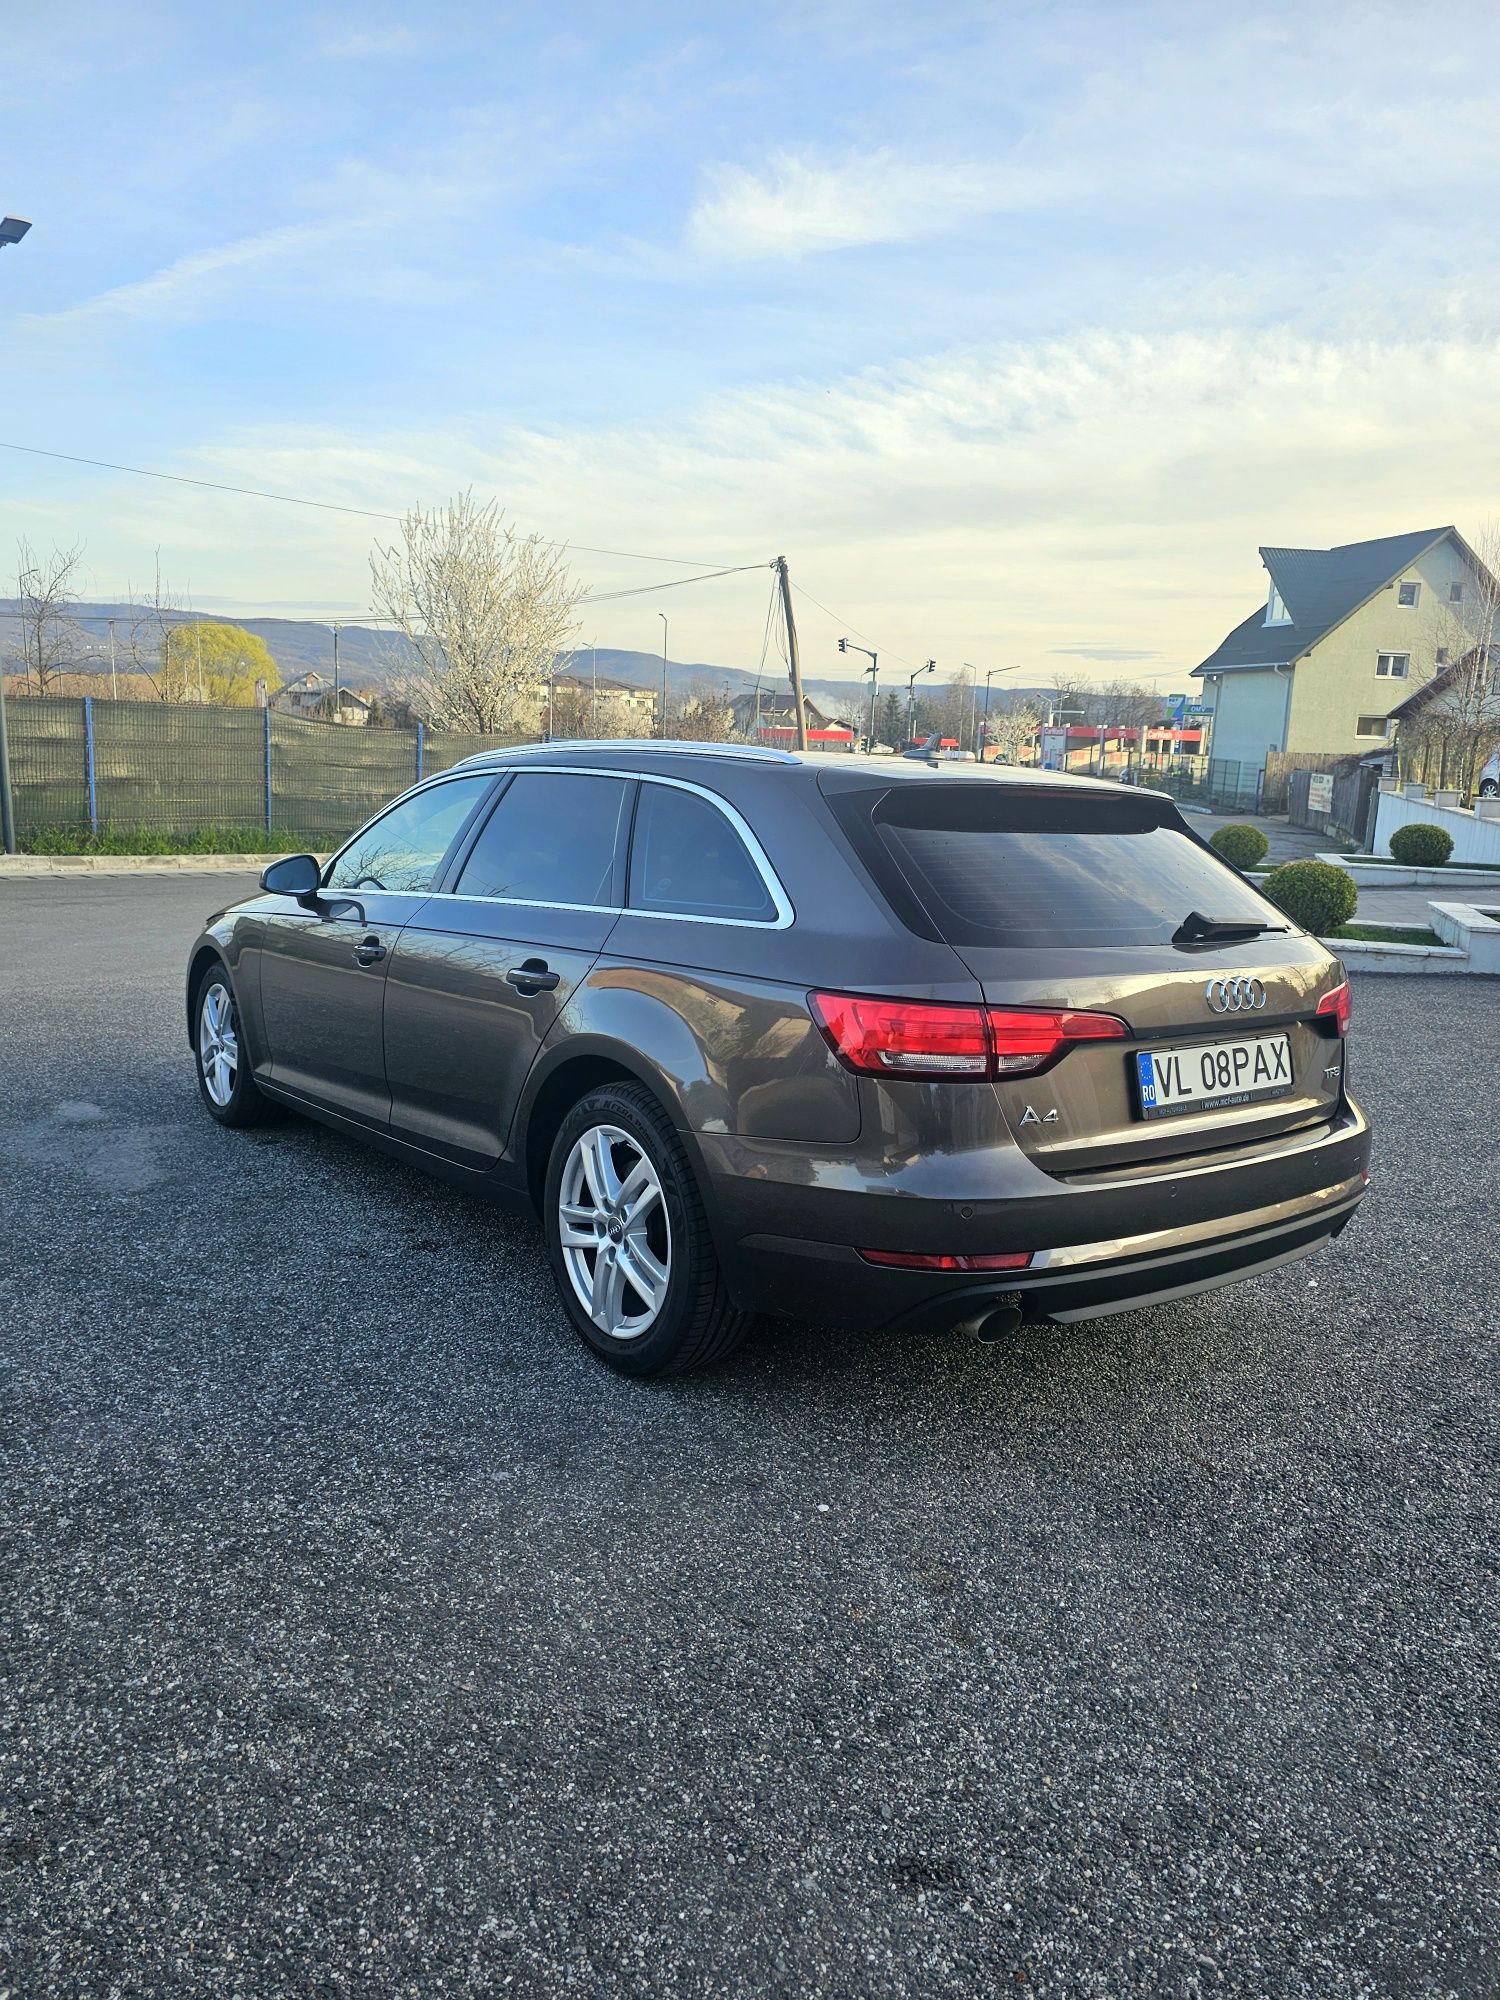 Audi A4 B9 Avant 2016
Virtual Cockpit